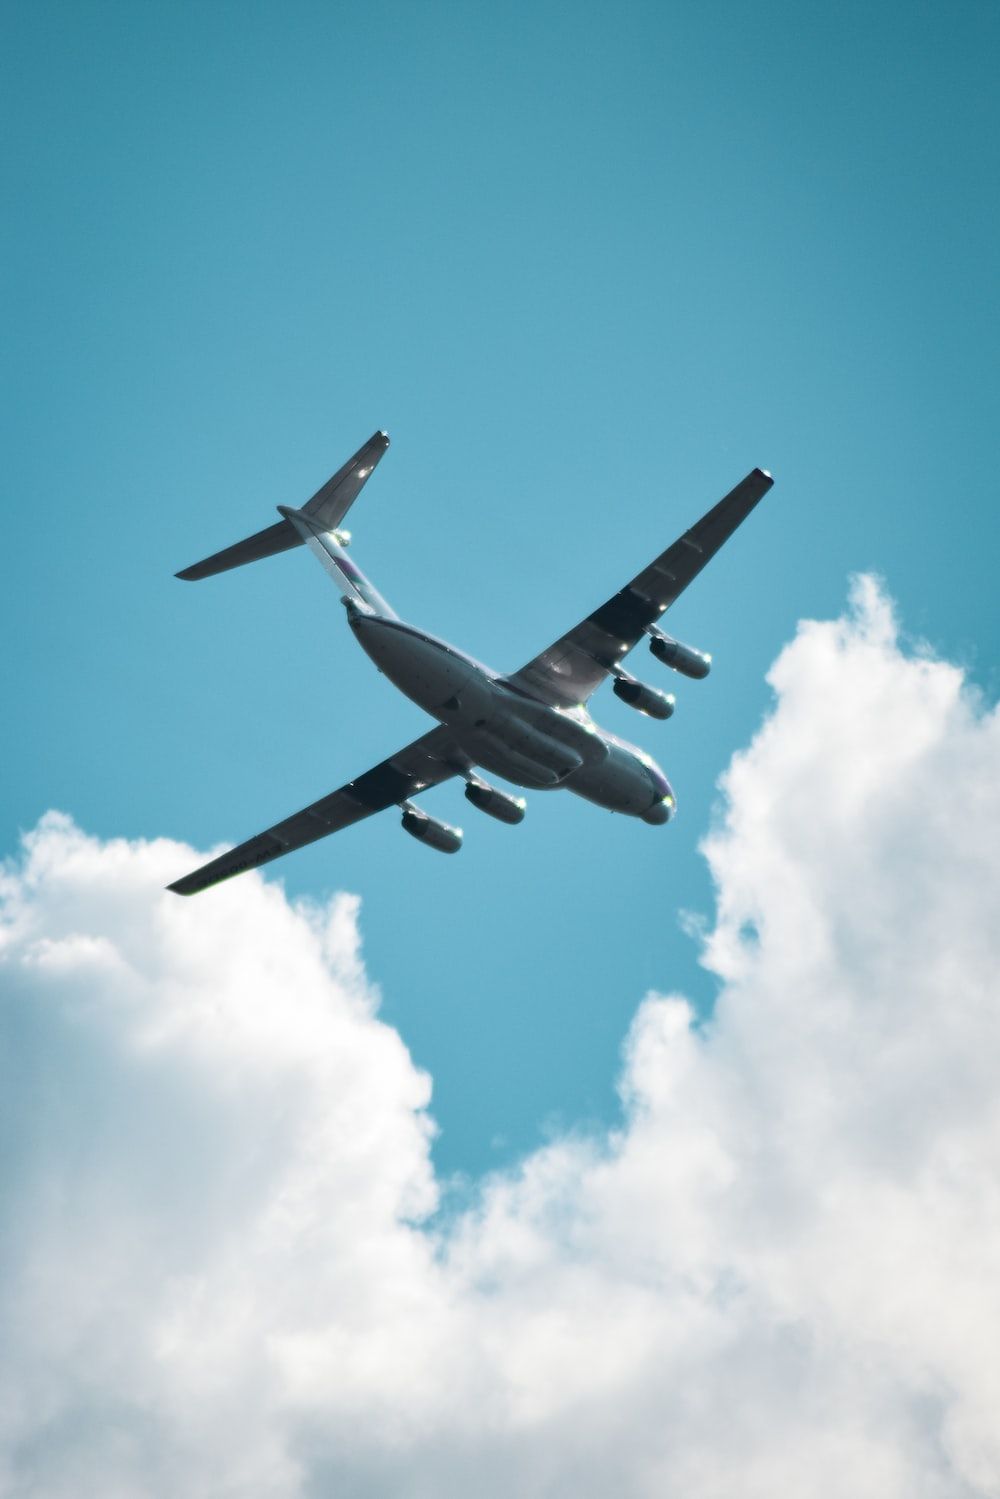  Flugzeug Hintergrundbild 1000x1499. Foto zum Thema Schwarzes Flugzeug, das tagsüber am Himmel fliegt